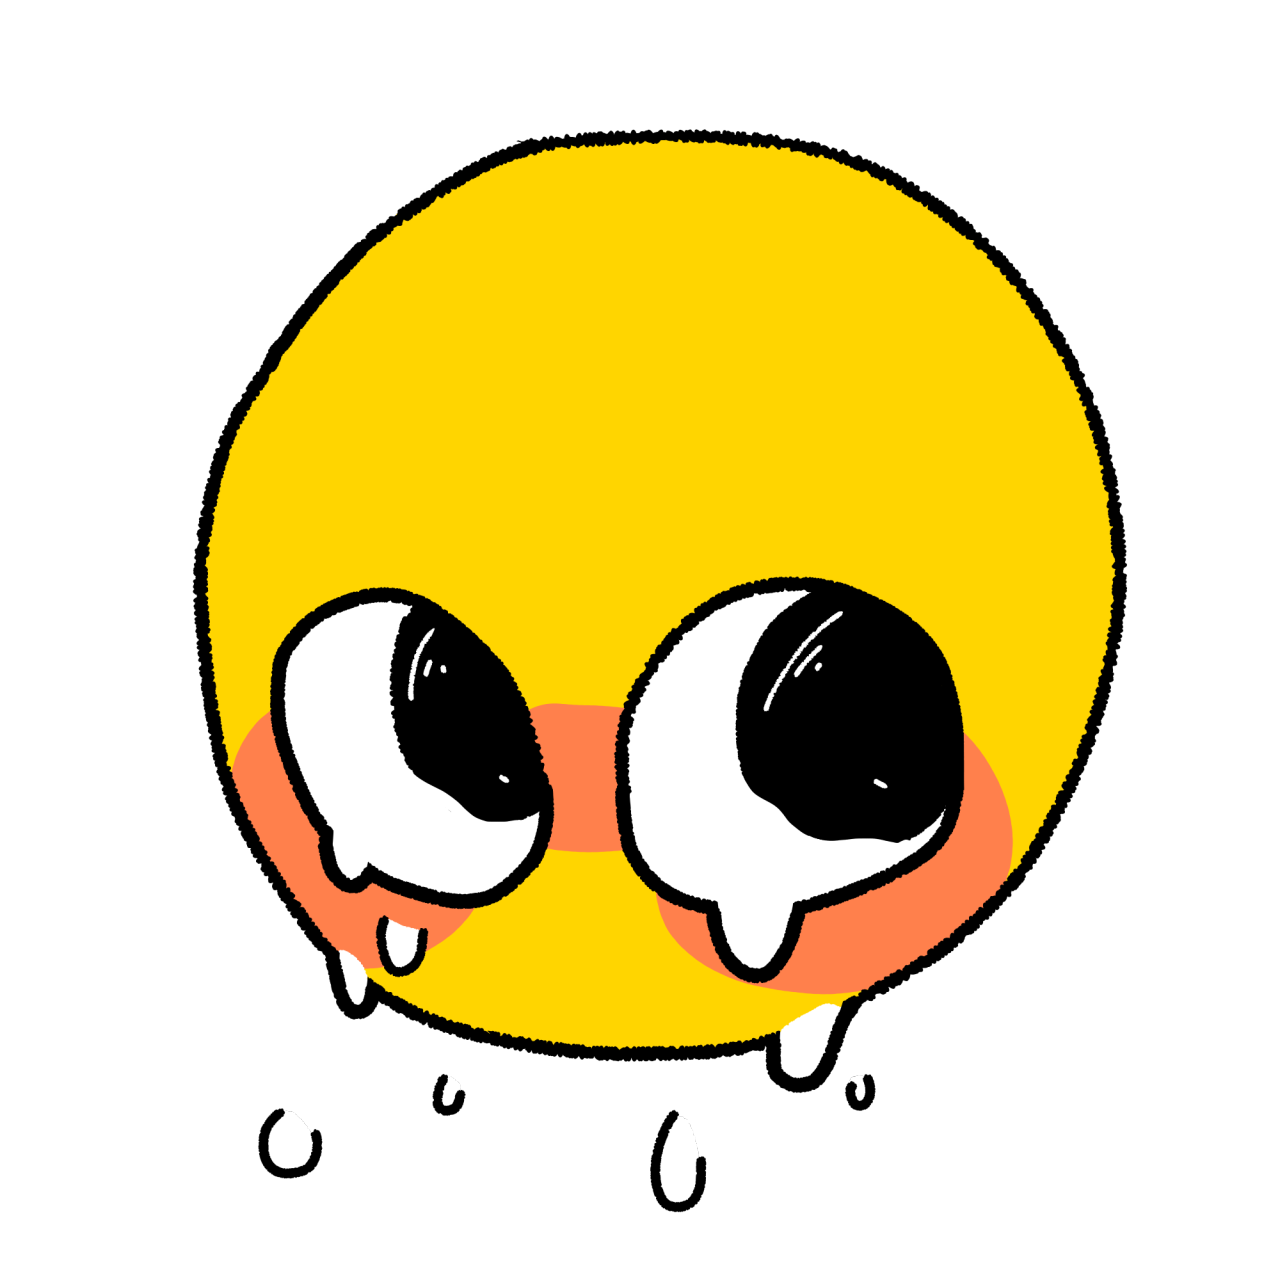 Cursed Emojis On Twitter Emoji Meme Emoji Pictures Cute Love Memes ...